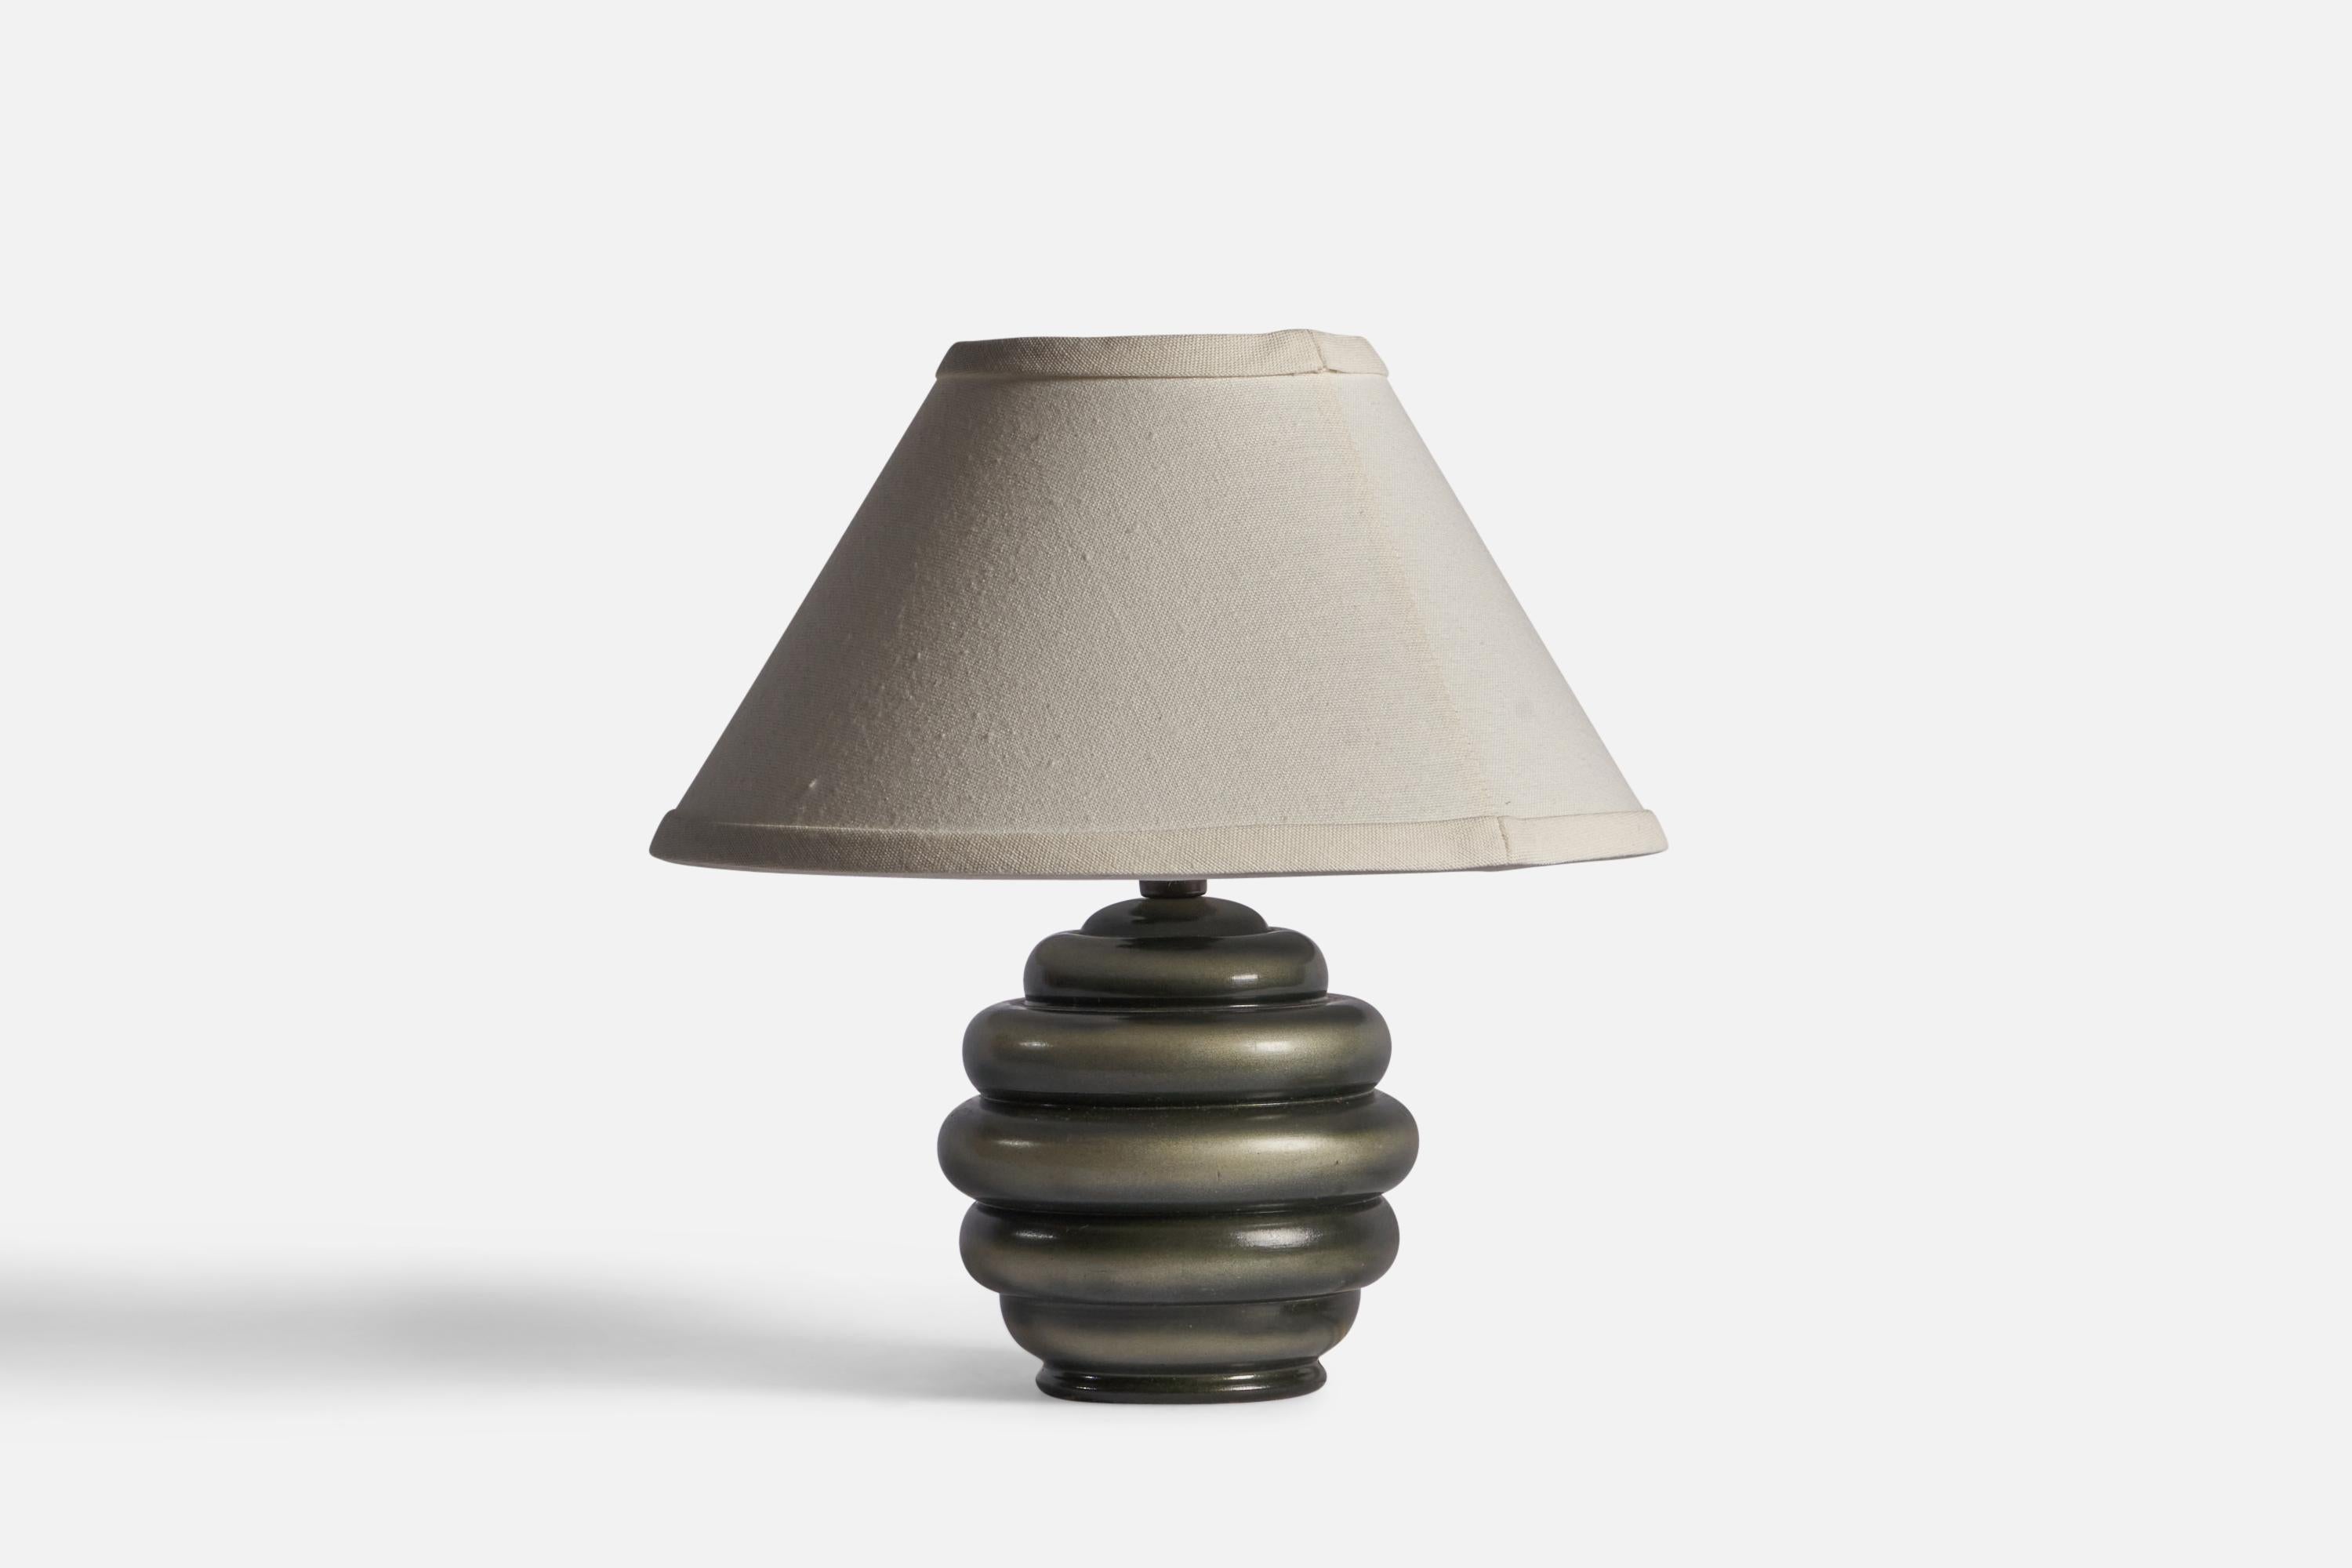 Lampe de table en bois émaillé gris et laiton, conçue et produite en Suède, années 1940.

Dimensions de la lampe (pouces) : 8.15